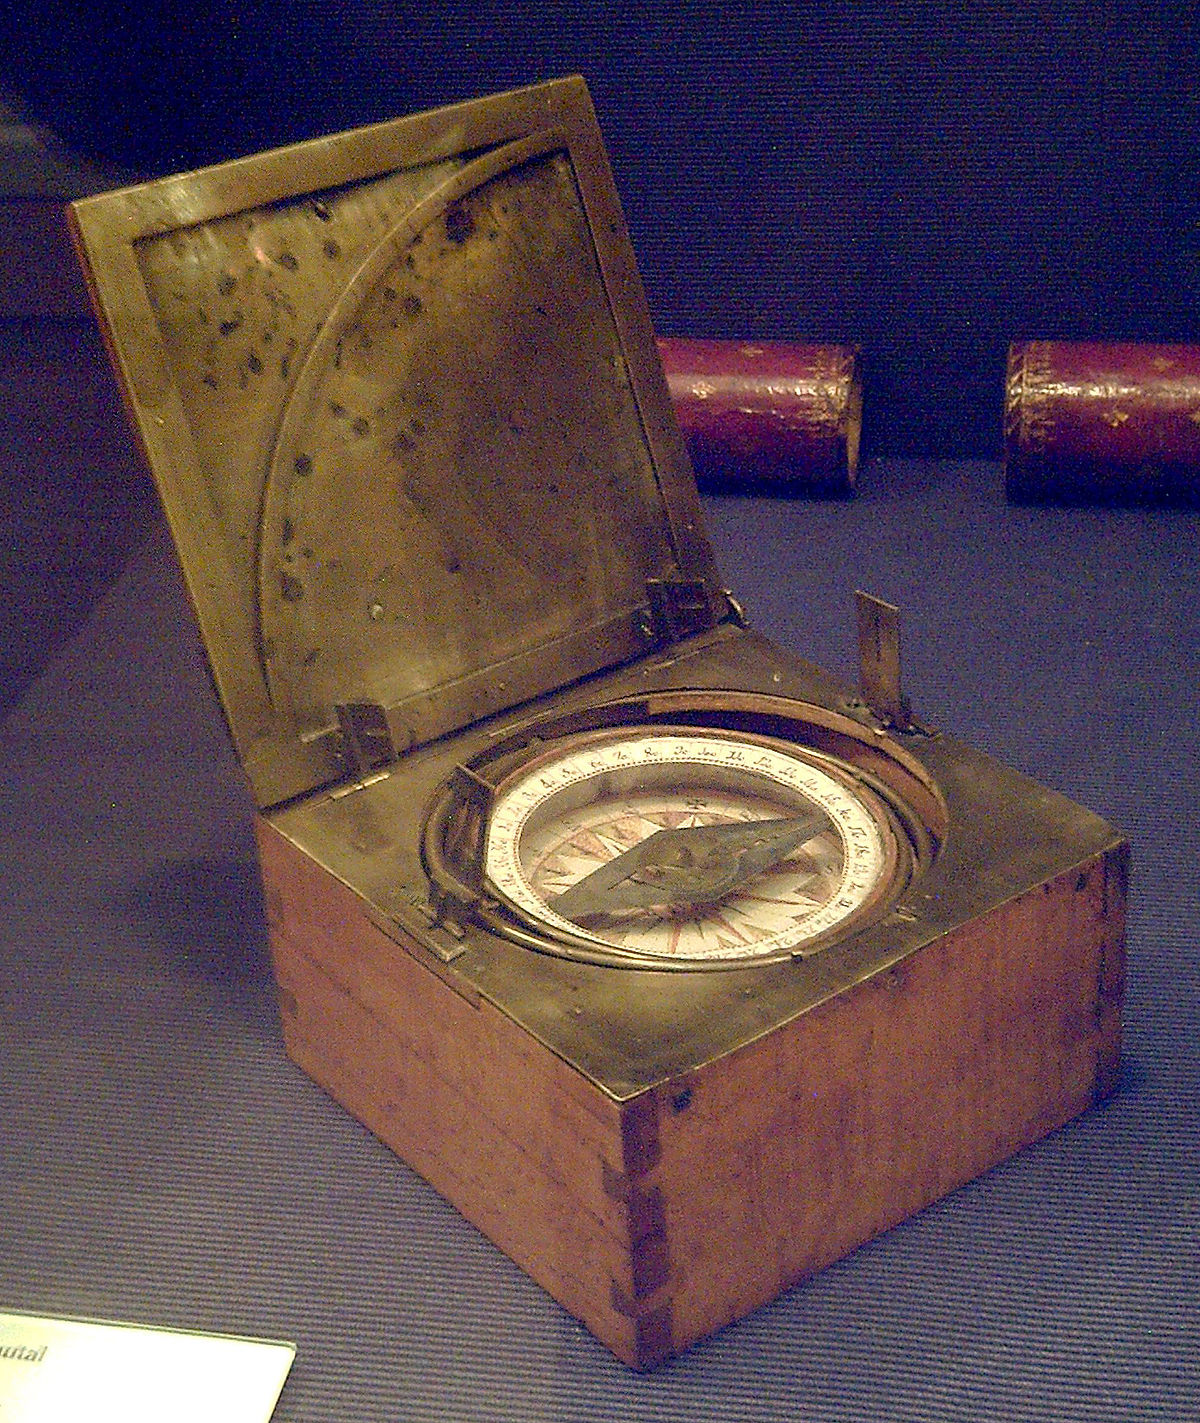 Azimuth compass - Wikipedia